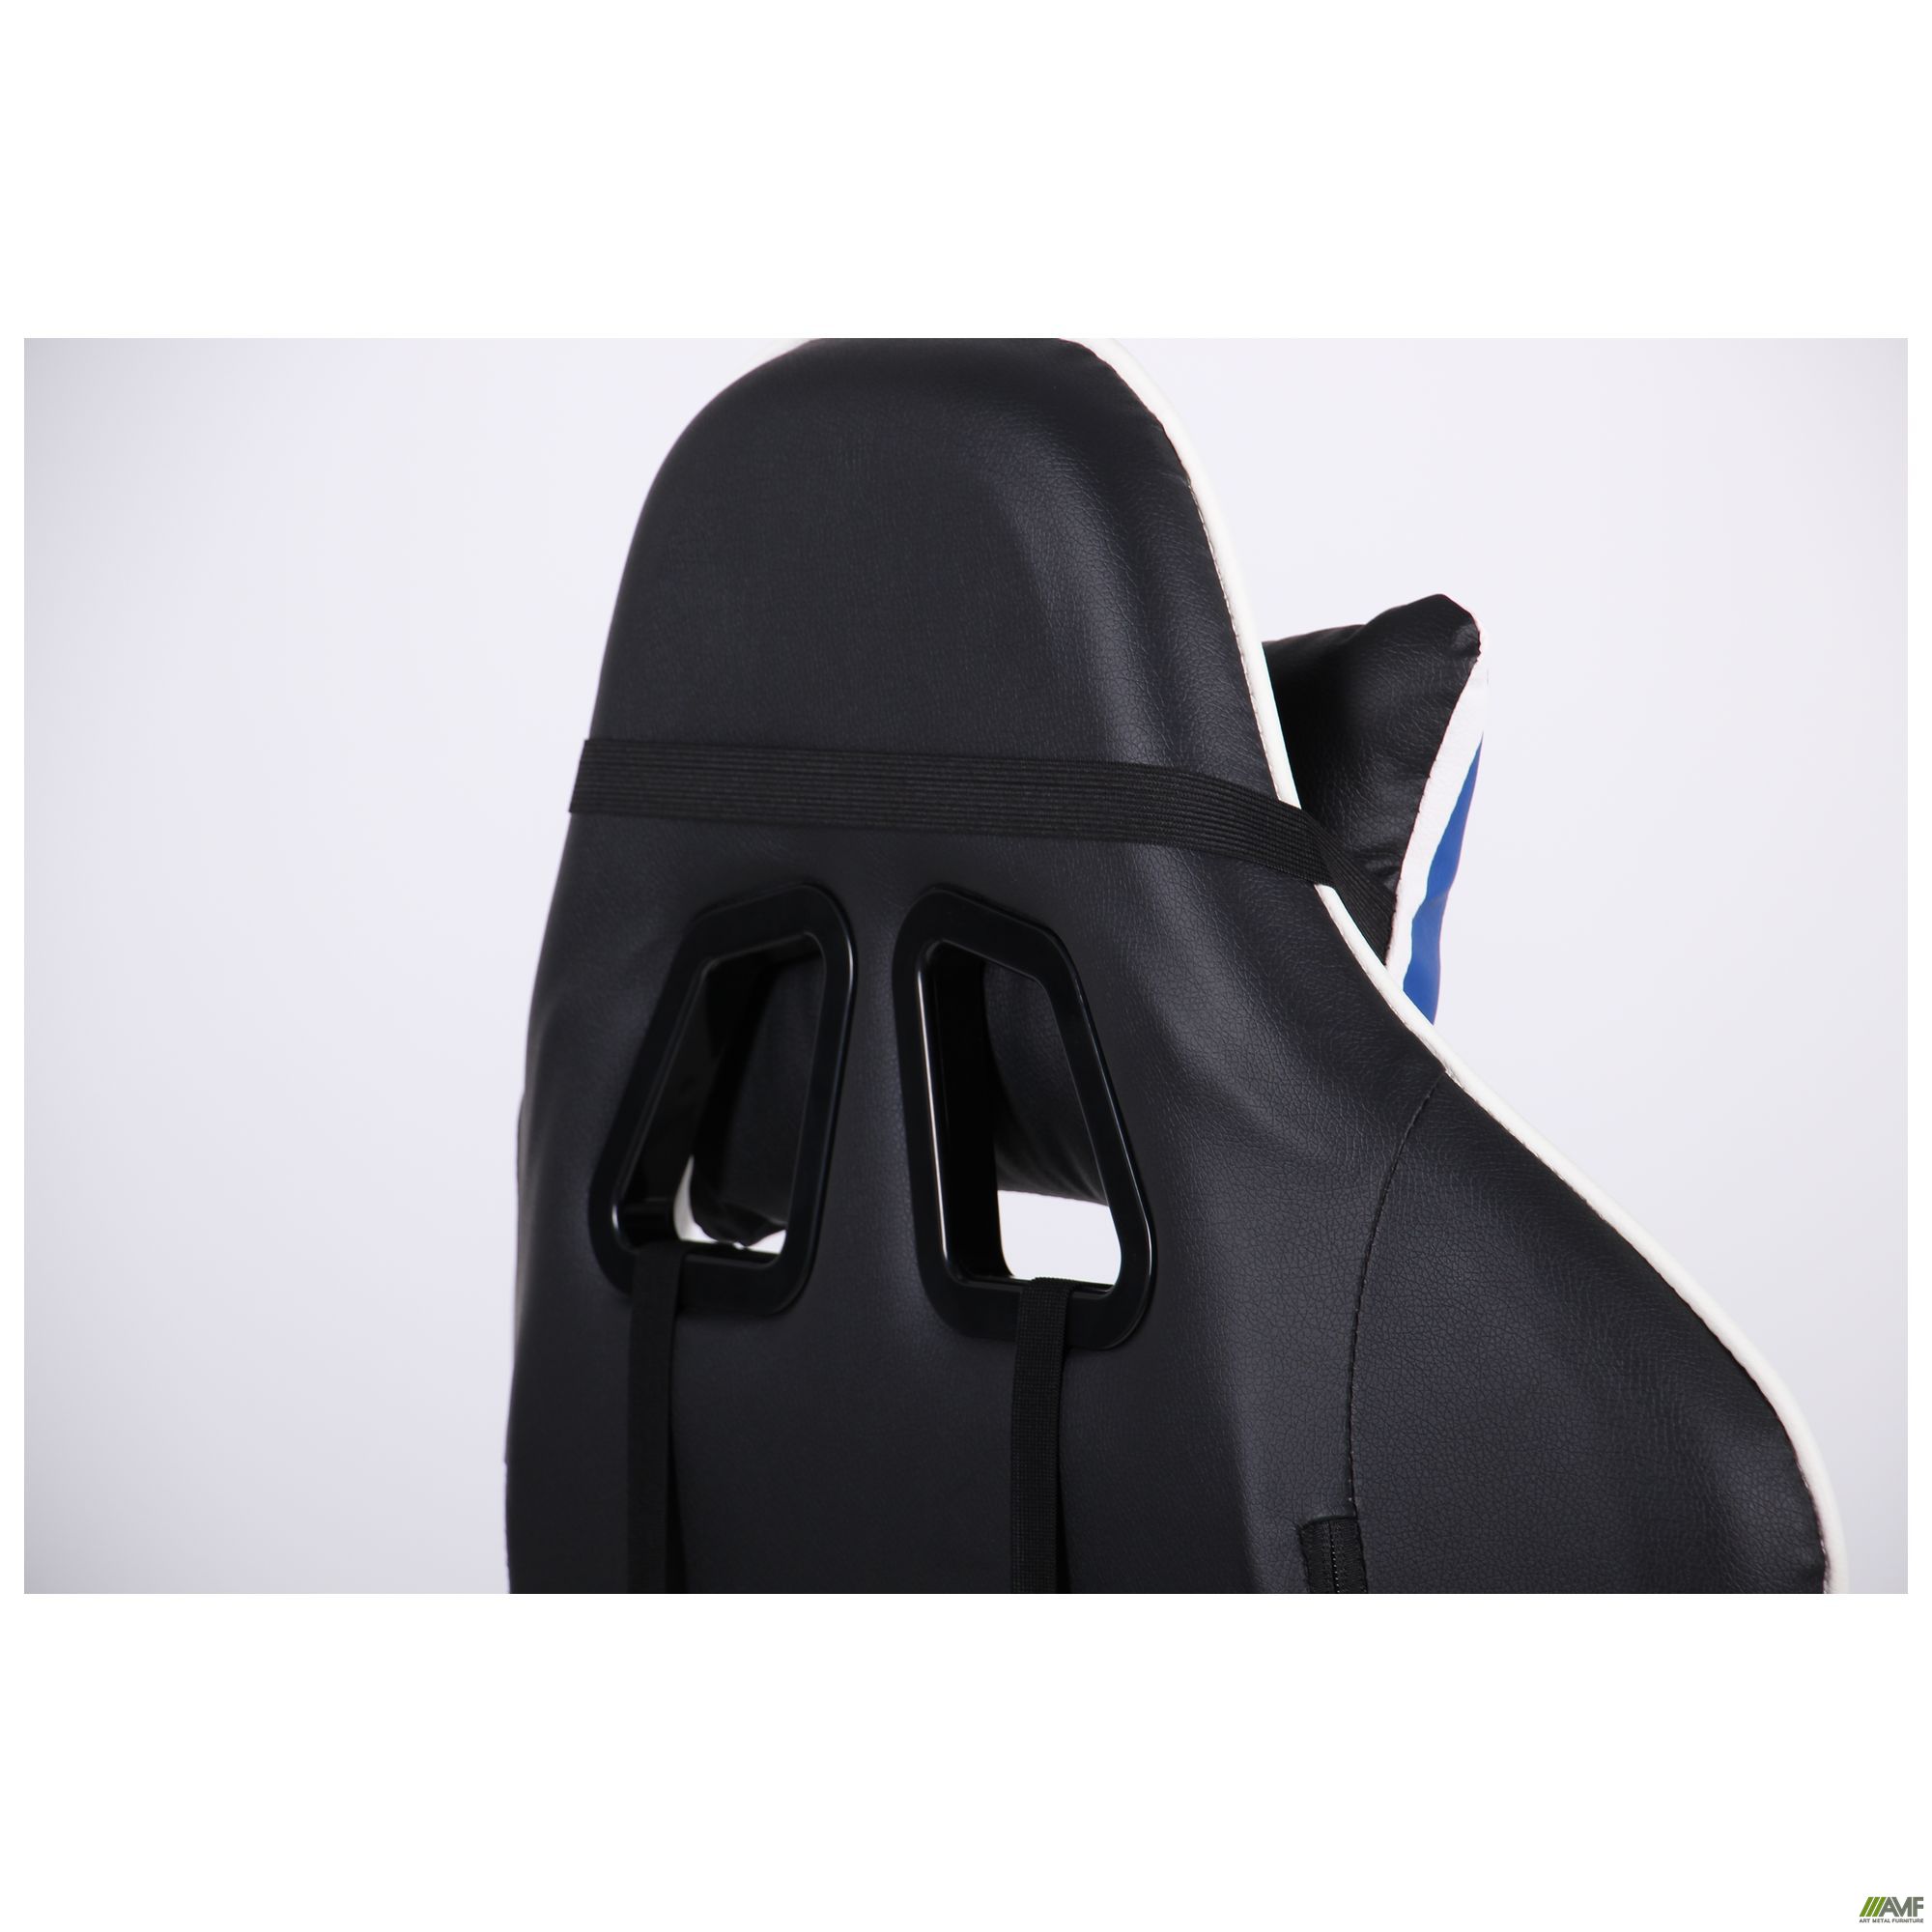 Фото 17 - Кресло VR Racer Dexter Frenzy черный/синий 